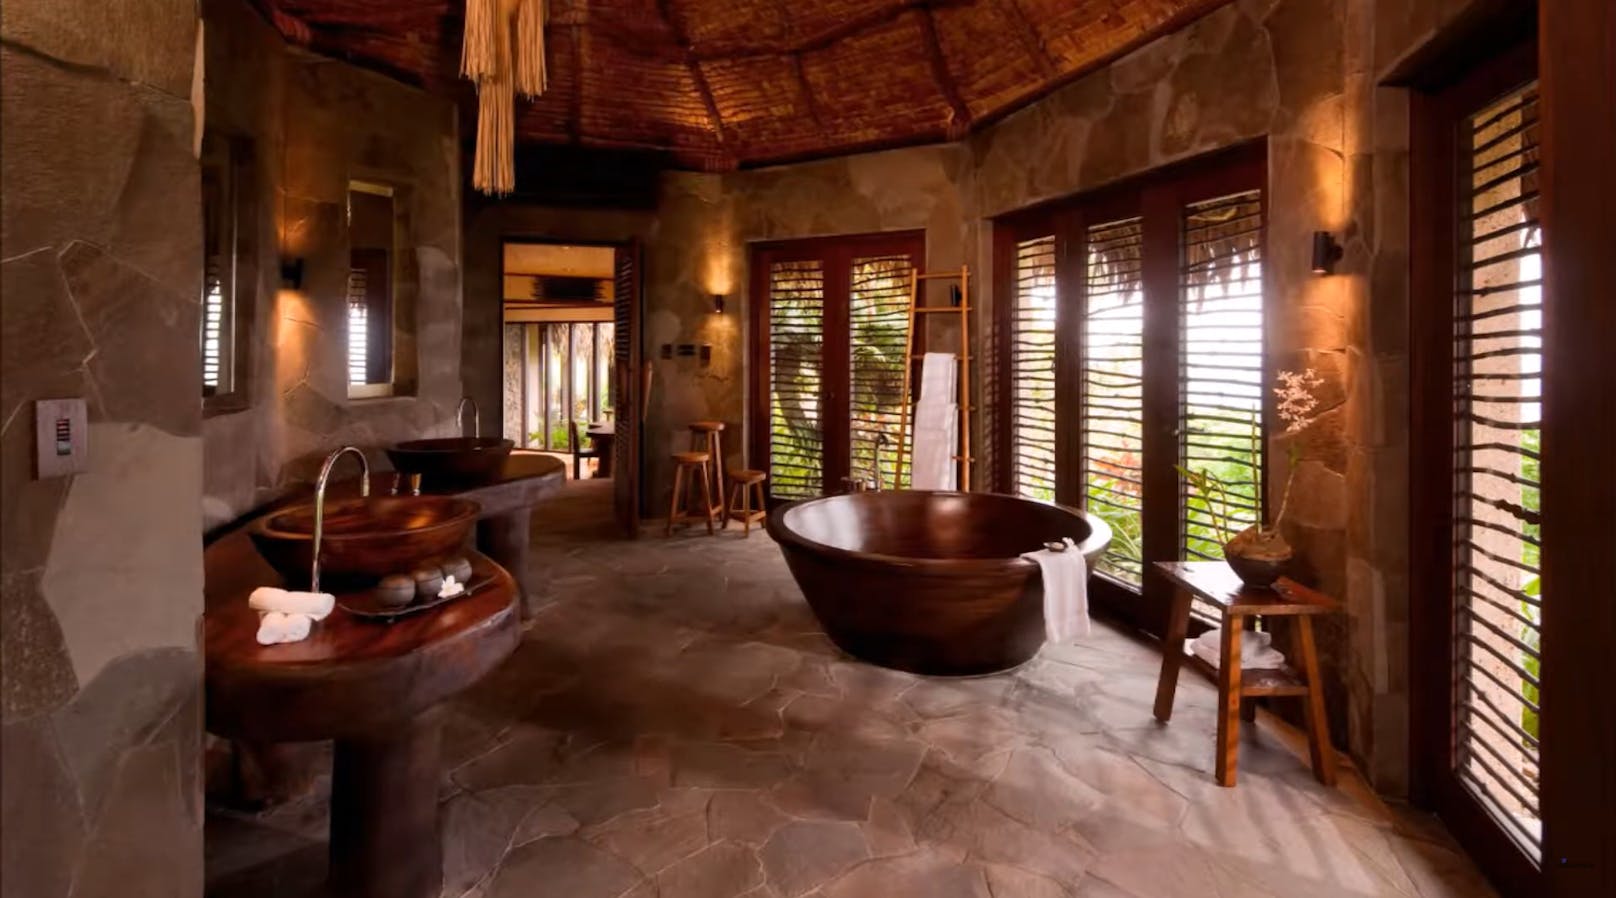 Das Badezimmer bietet viel Platz und eine freistehende Badewanne mit atemberaubender Aussicht.